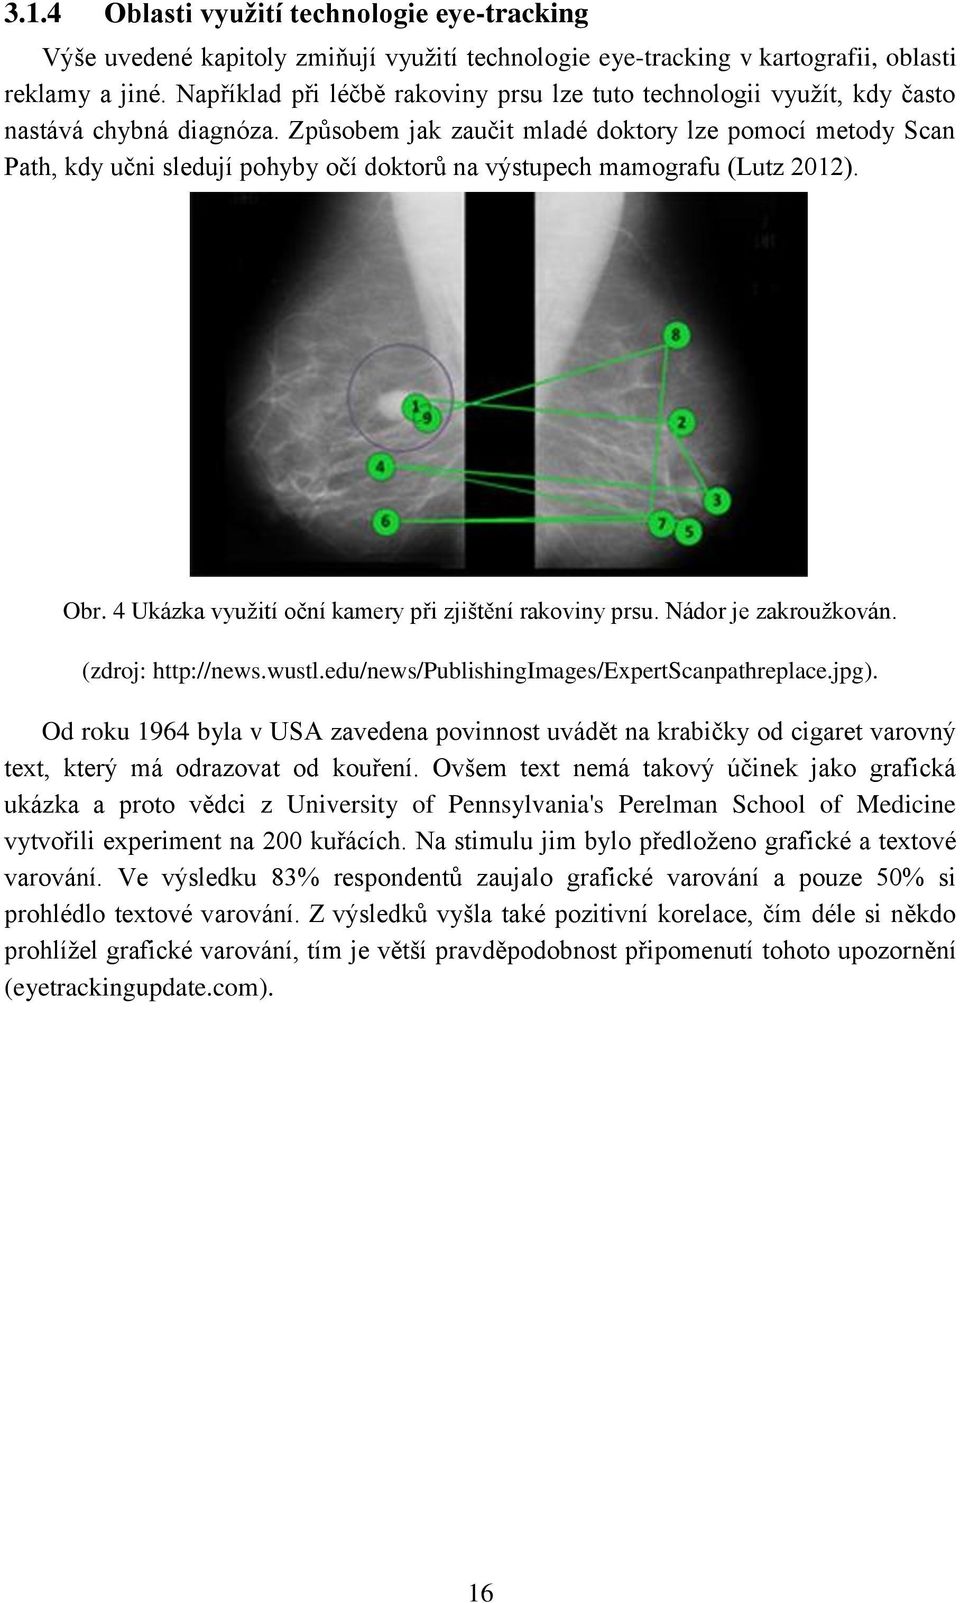 Způsobem jak zaučit mladé doktory lze pomocí metody Scan Path, kdy učni sledují pohyby očí doktorů na výstupech mamografu (Lutz 2012). Obr. 4 Ukázka využití oční kamery při zjištění rakoviny prsu.